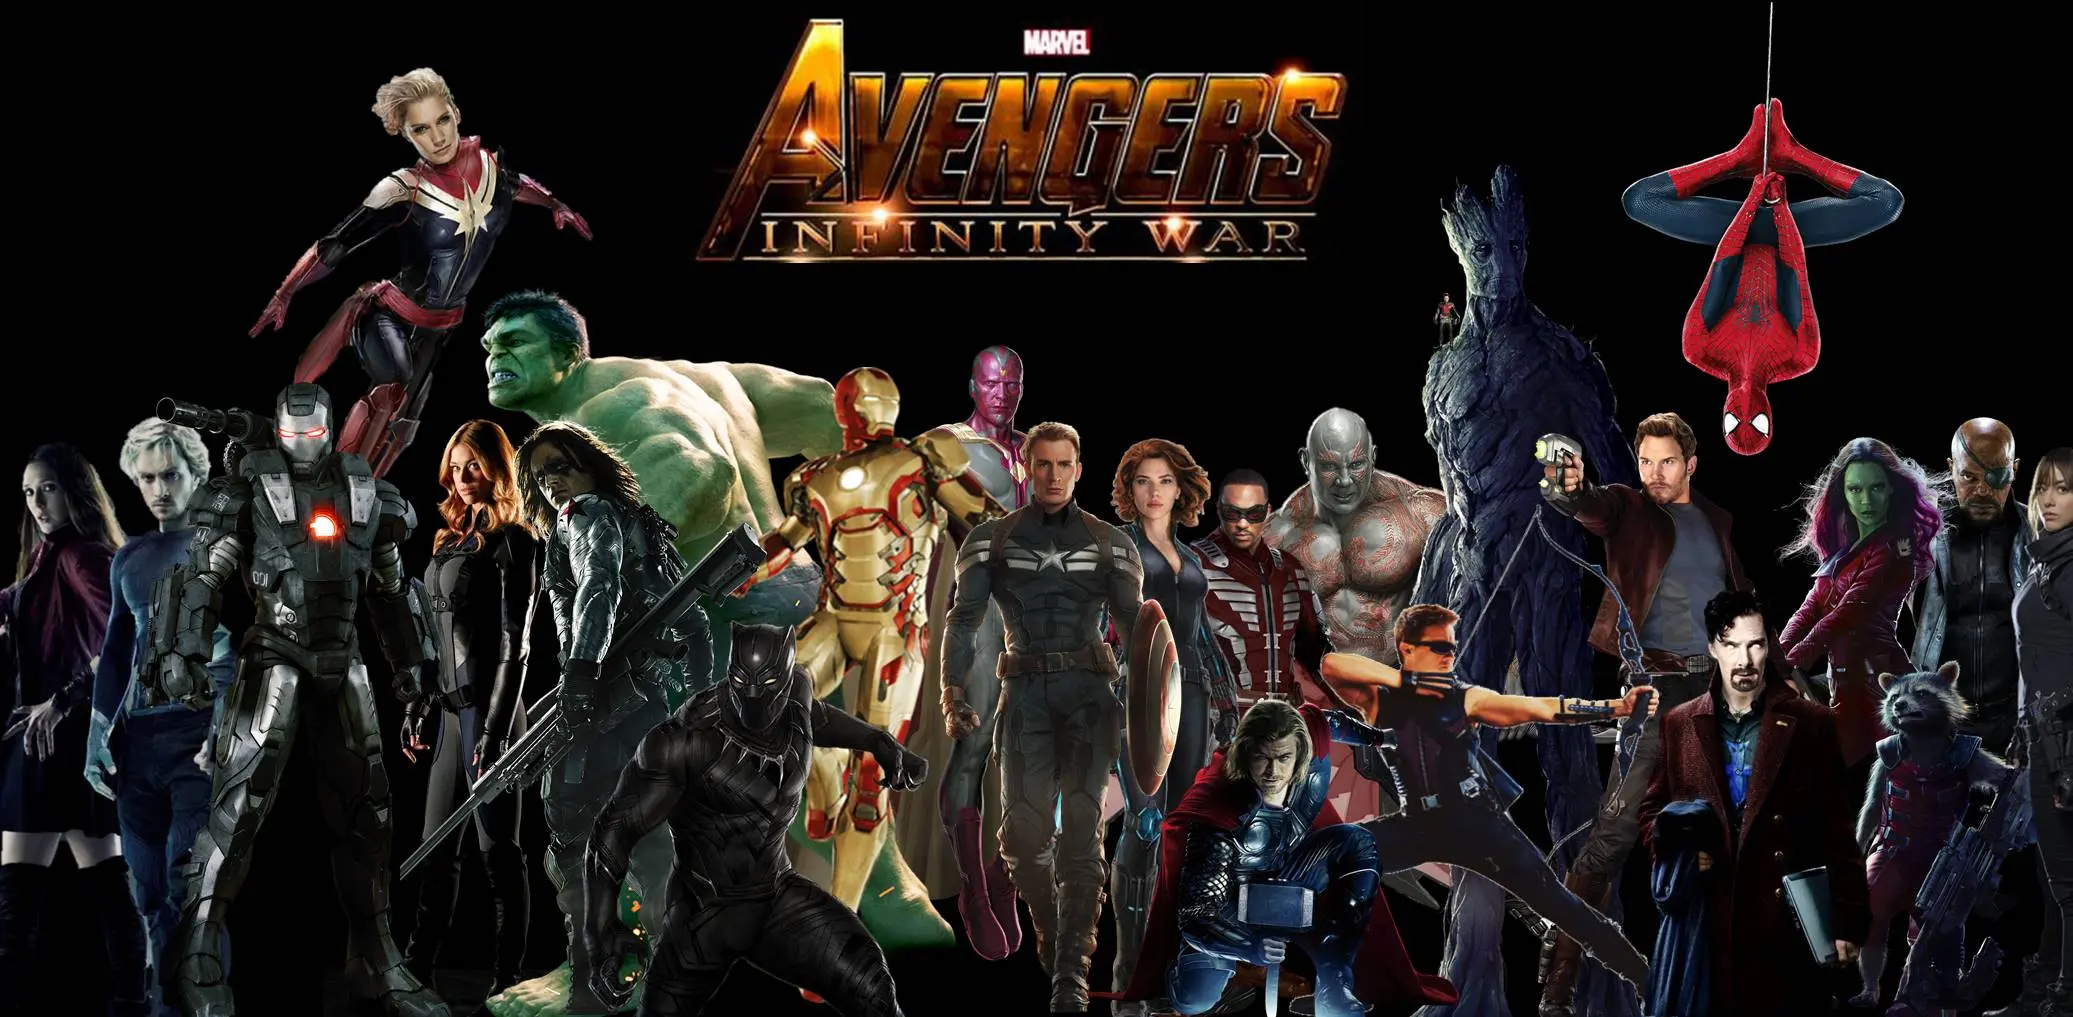 Avengers: Infinity War disebut akan menyandang film dengan budget termahal. Berapa dana yang dikeluarkan?. (Via: QuirkyByte)